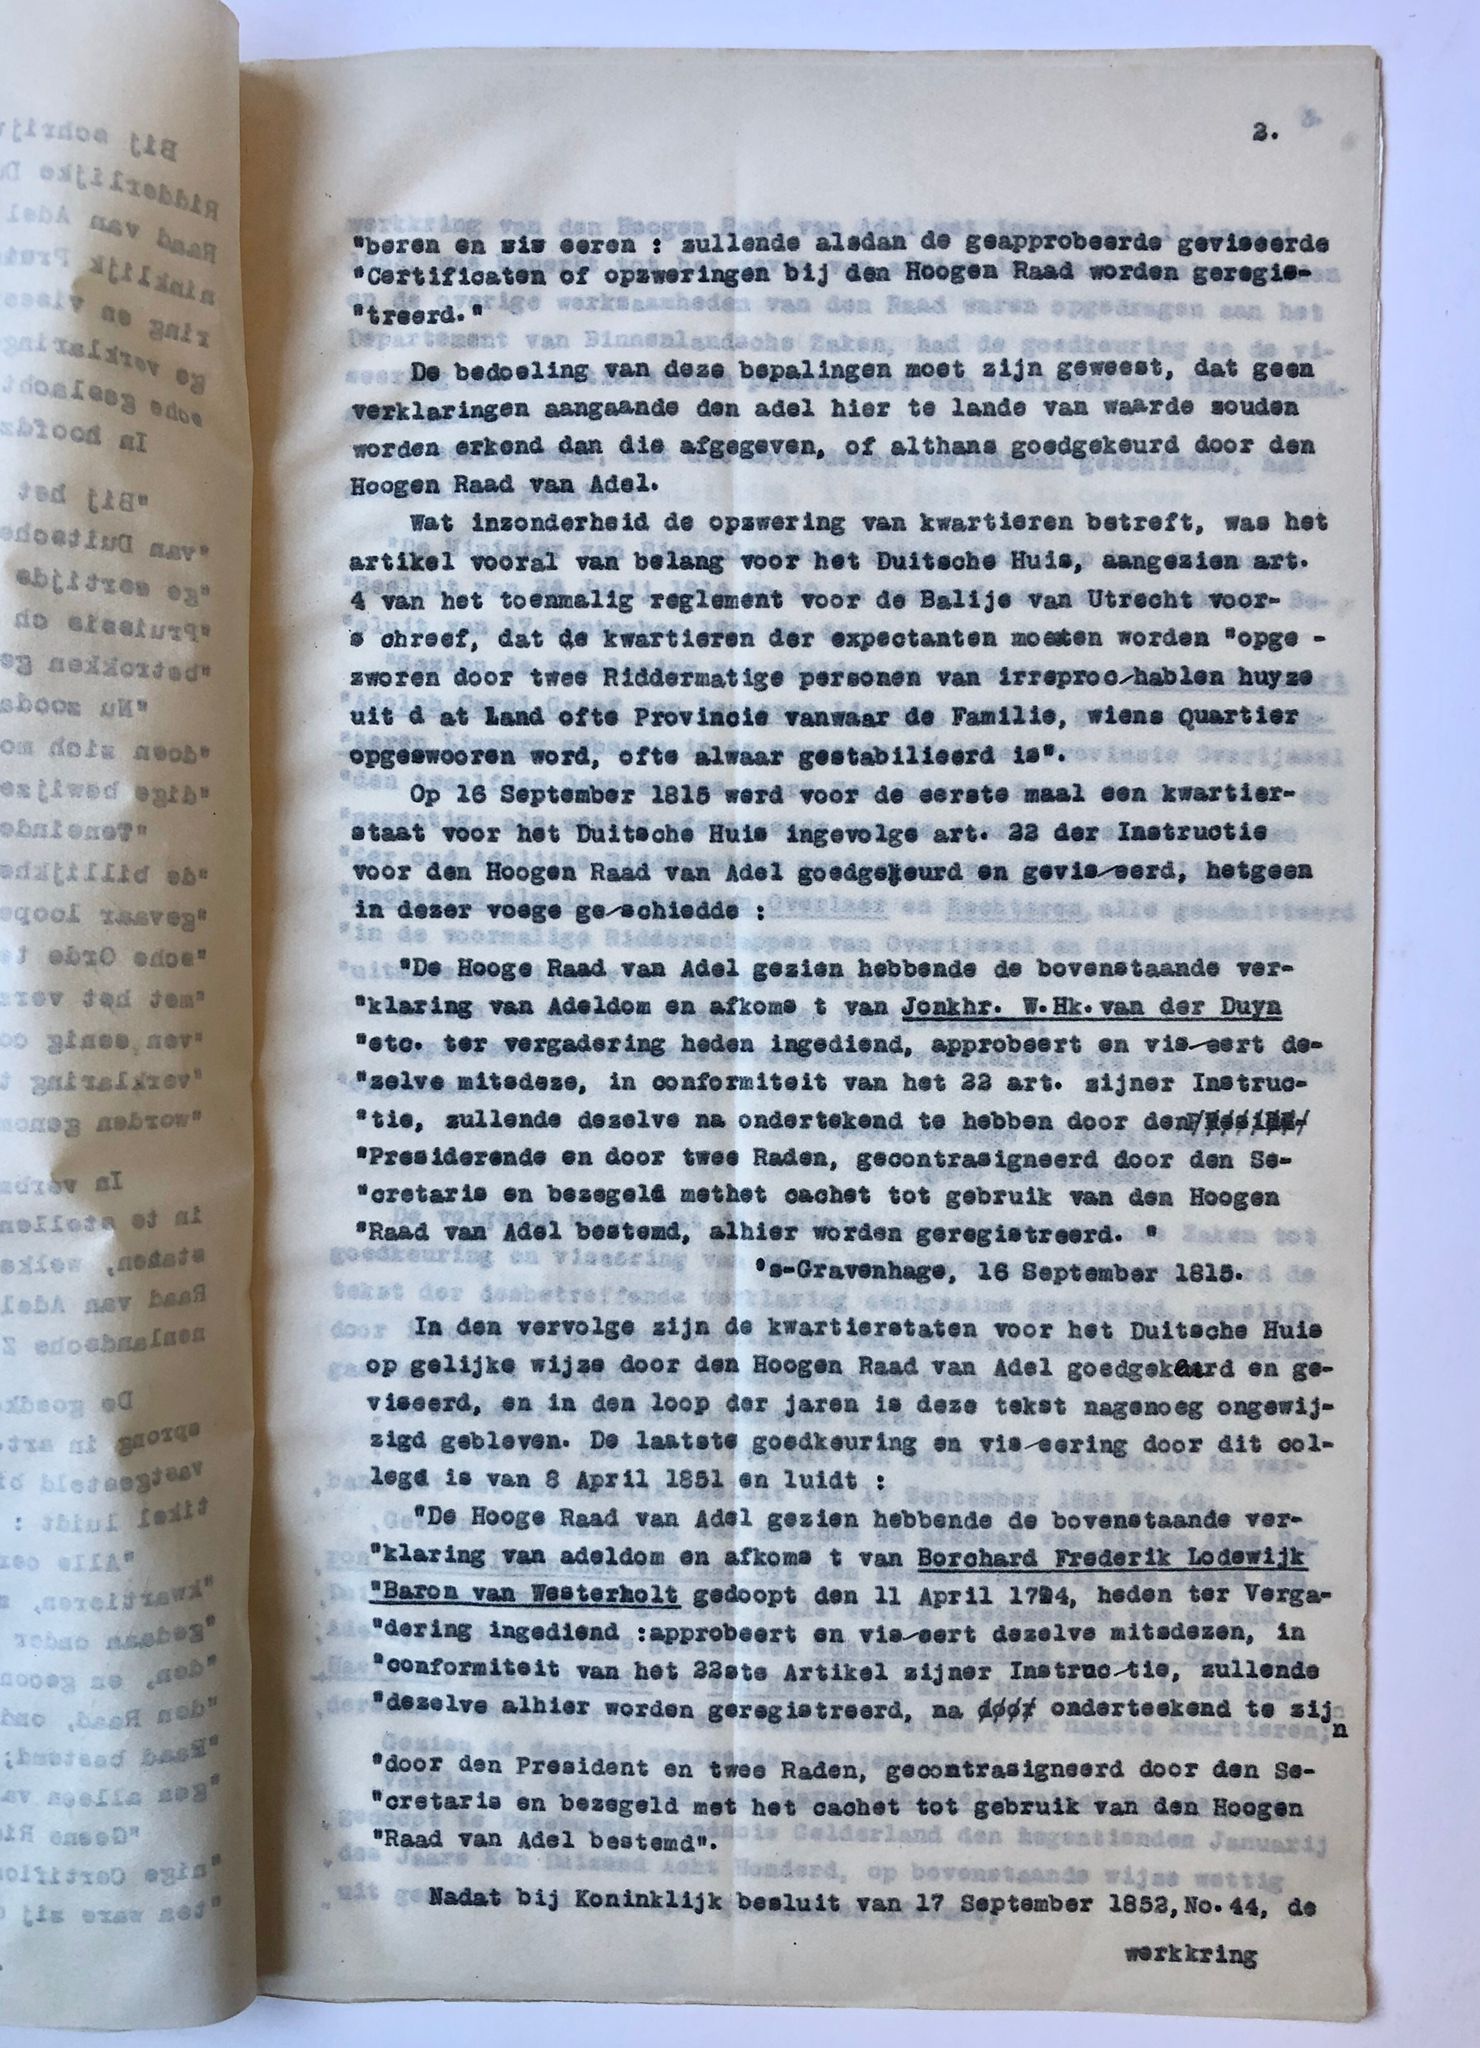 [Typed document, nobility, German, Prussian, 1927] Getypt artikel 'Goedkeuring en viseering van kwartierstaten voor het Duitsche huis', door W.A. Beelaerts van Blokland, 1927, 11 pag.